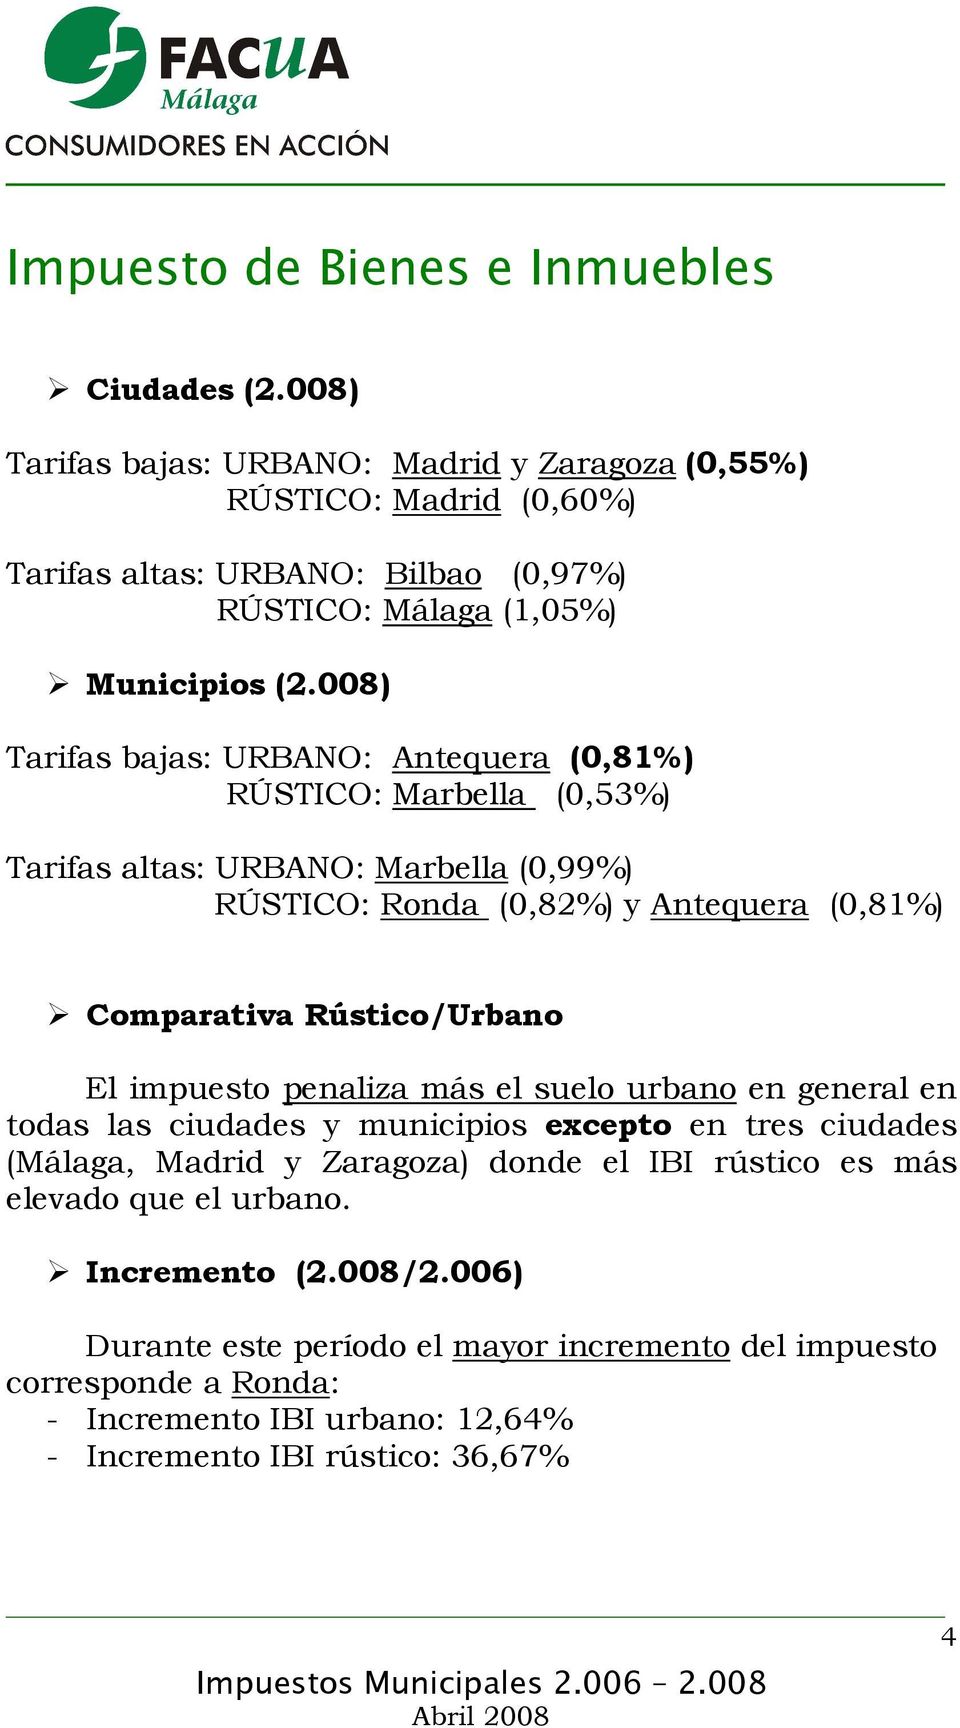 008) Tarifas bajas: URBANO: Antequera (0,81%) RÚSTICO: Marbella (0,53%) Tarifas altas: URBANO: Marbella (0,99%) RÚSTICO: Ronda (0,82%) y Antequera (0,81%) Comparativa Rústico/Urbano